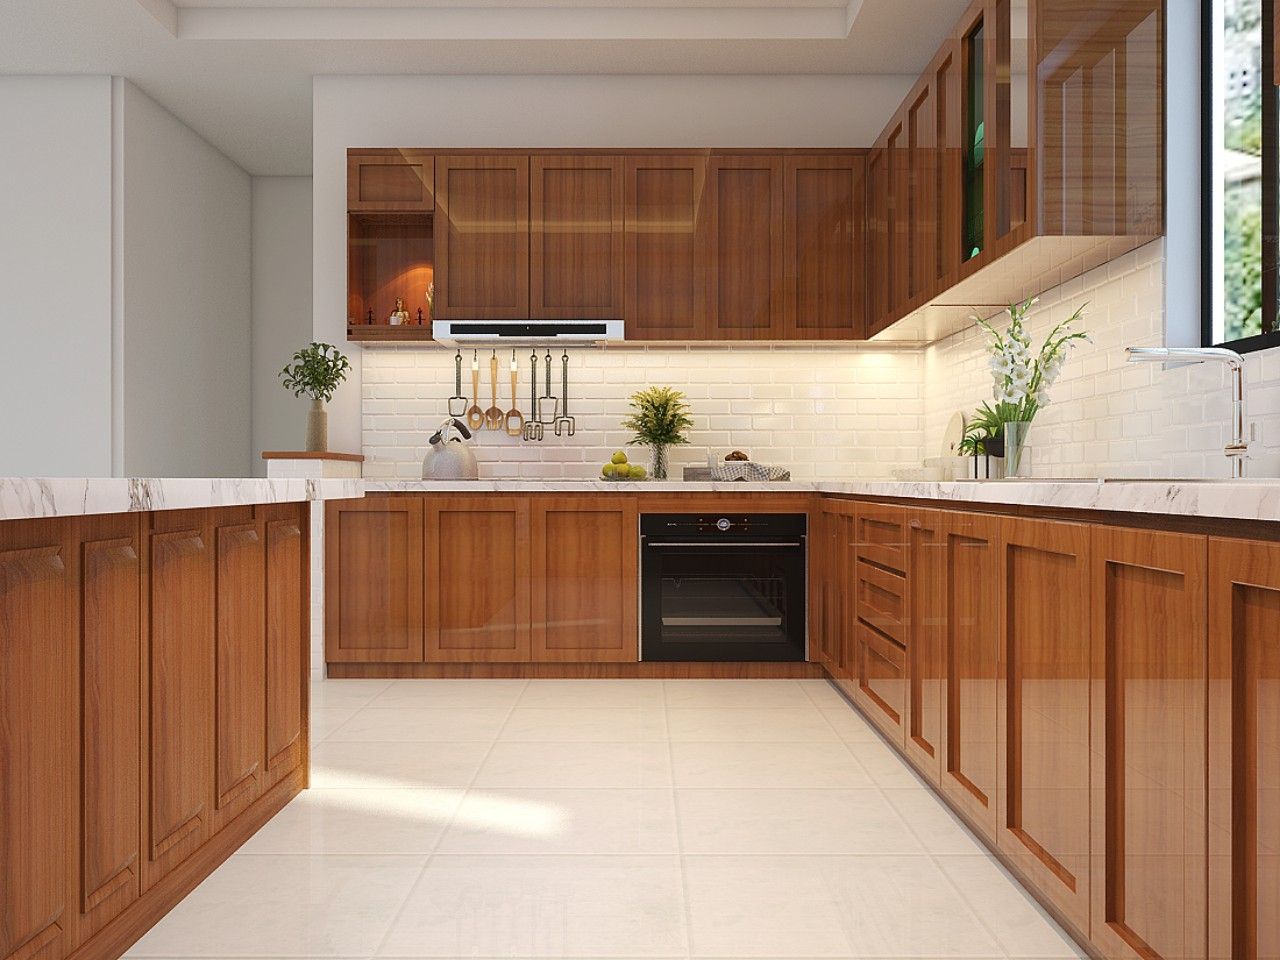 Nếu bạn lựa chọn gỗ gõ đỏ để đóng tủ bếp thì đây cũng được đánh giá cao về độ bền